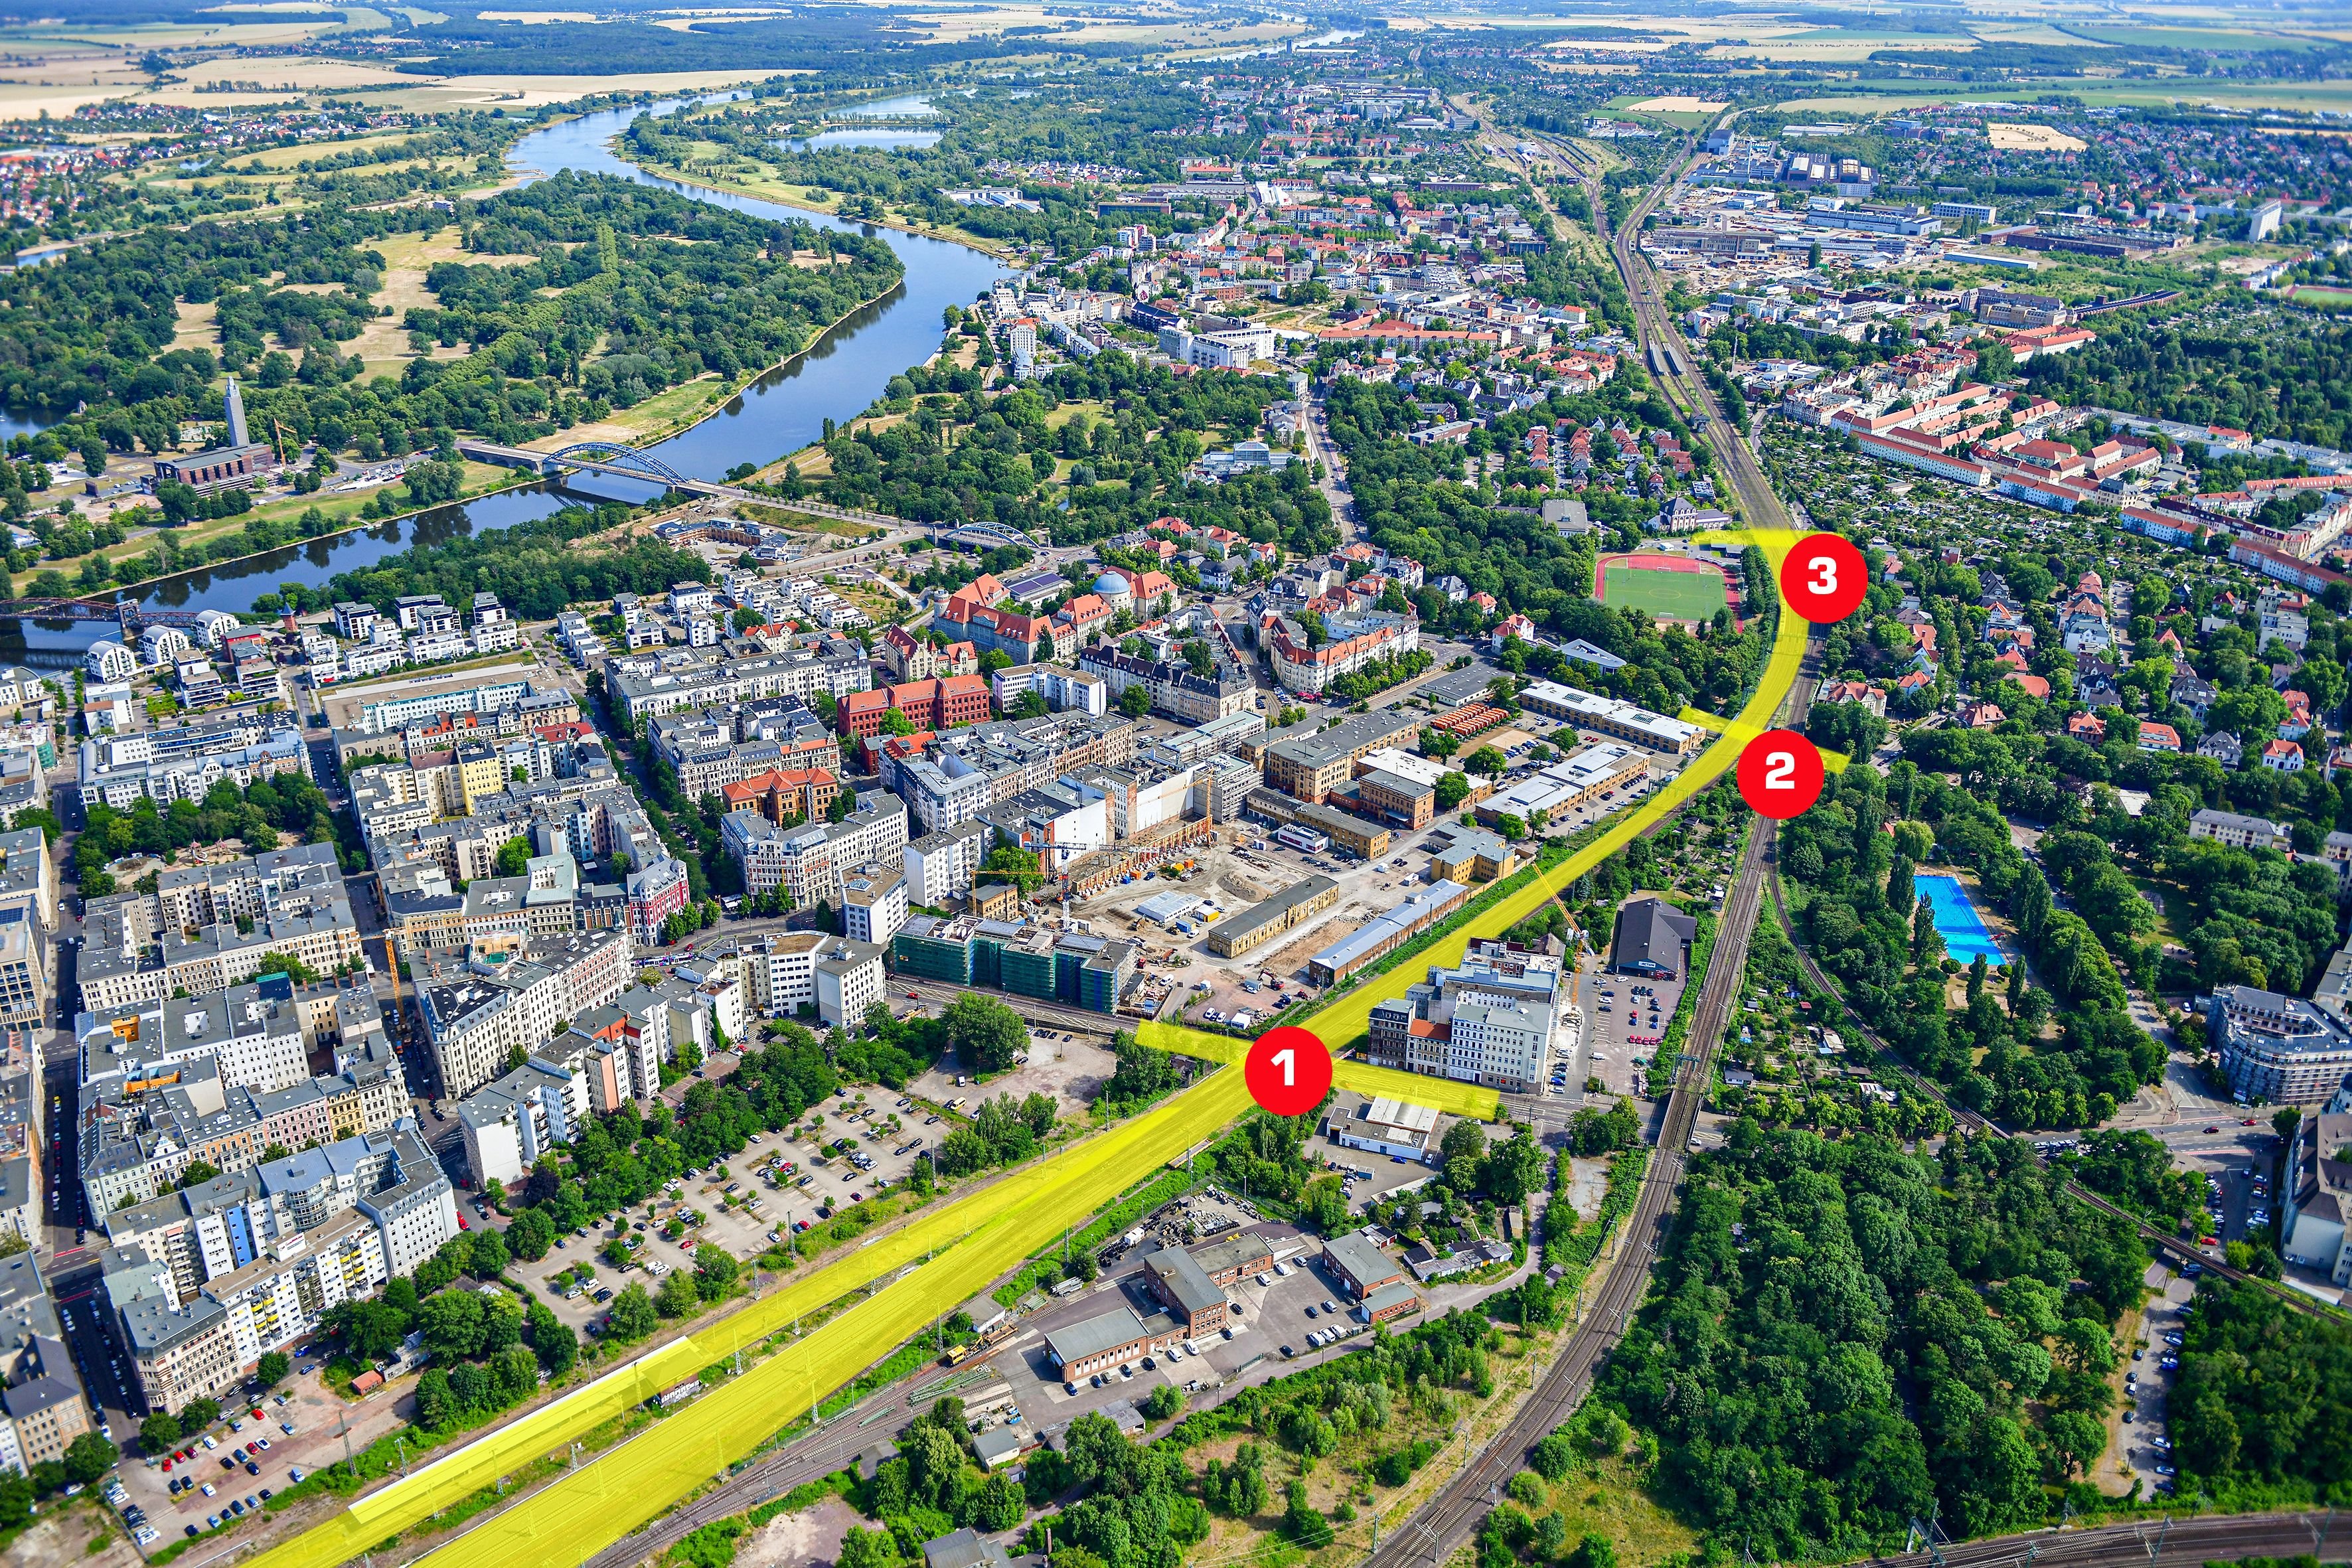 Zugverkehr: Bahn macht Magdeburg zur Großbaustelle - Sperrungen und Fahrplanänderungen folgen